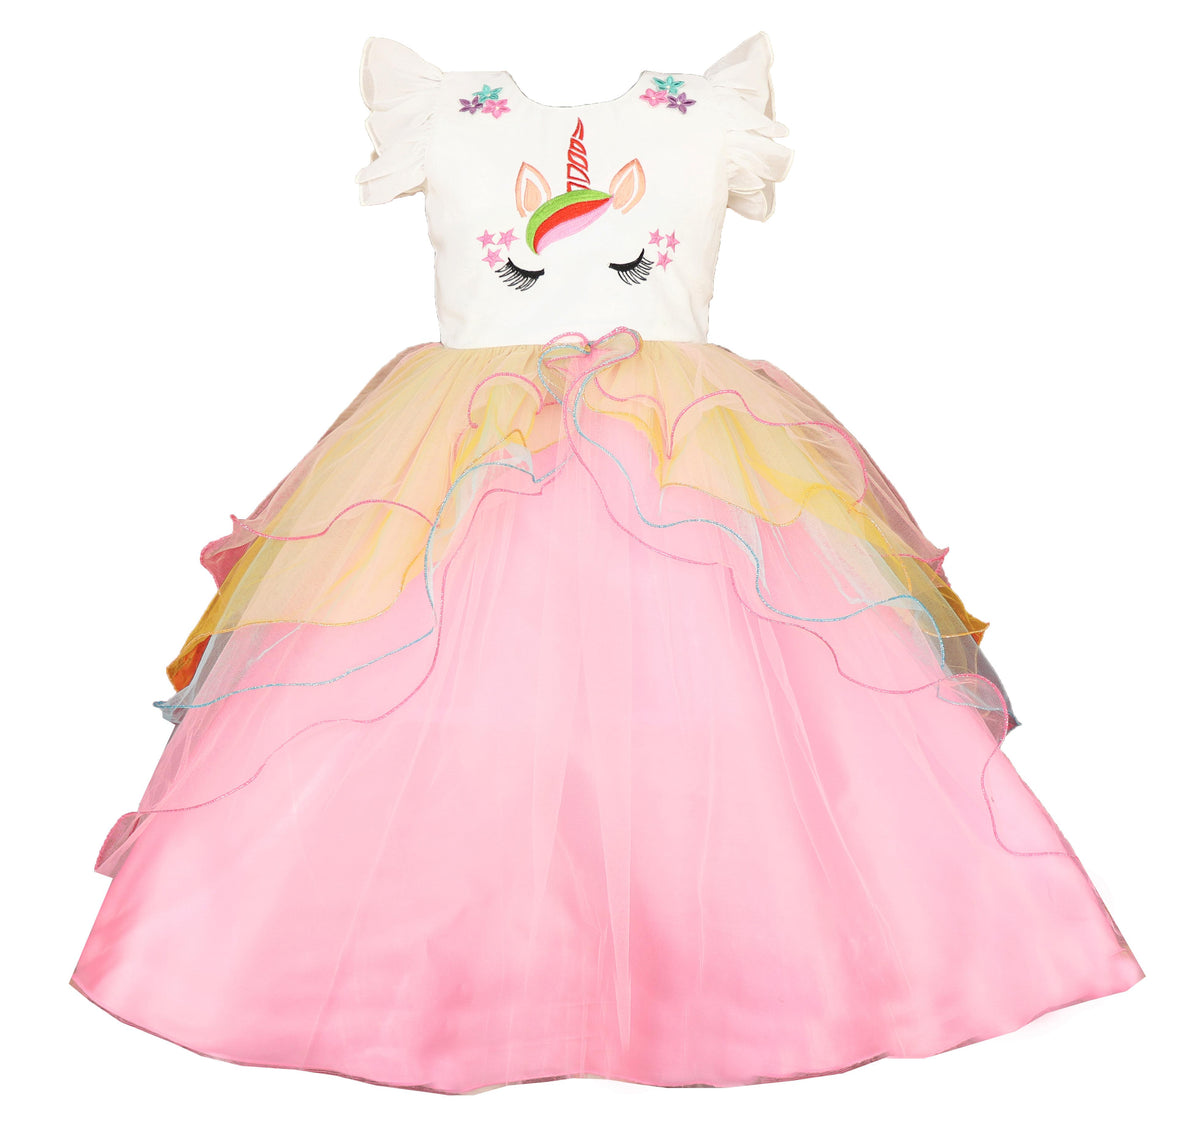 My Lil Princess Unicorn Ball Dress Front View